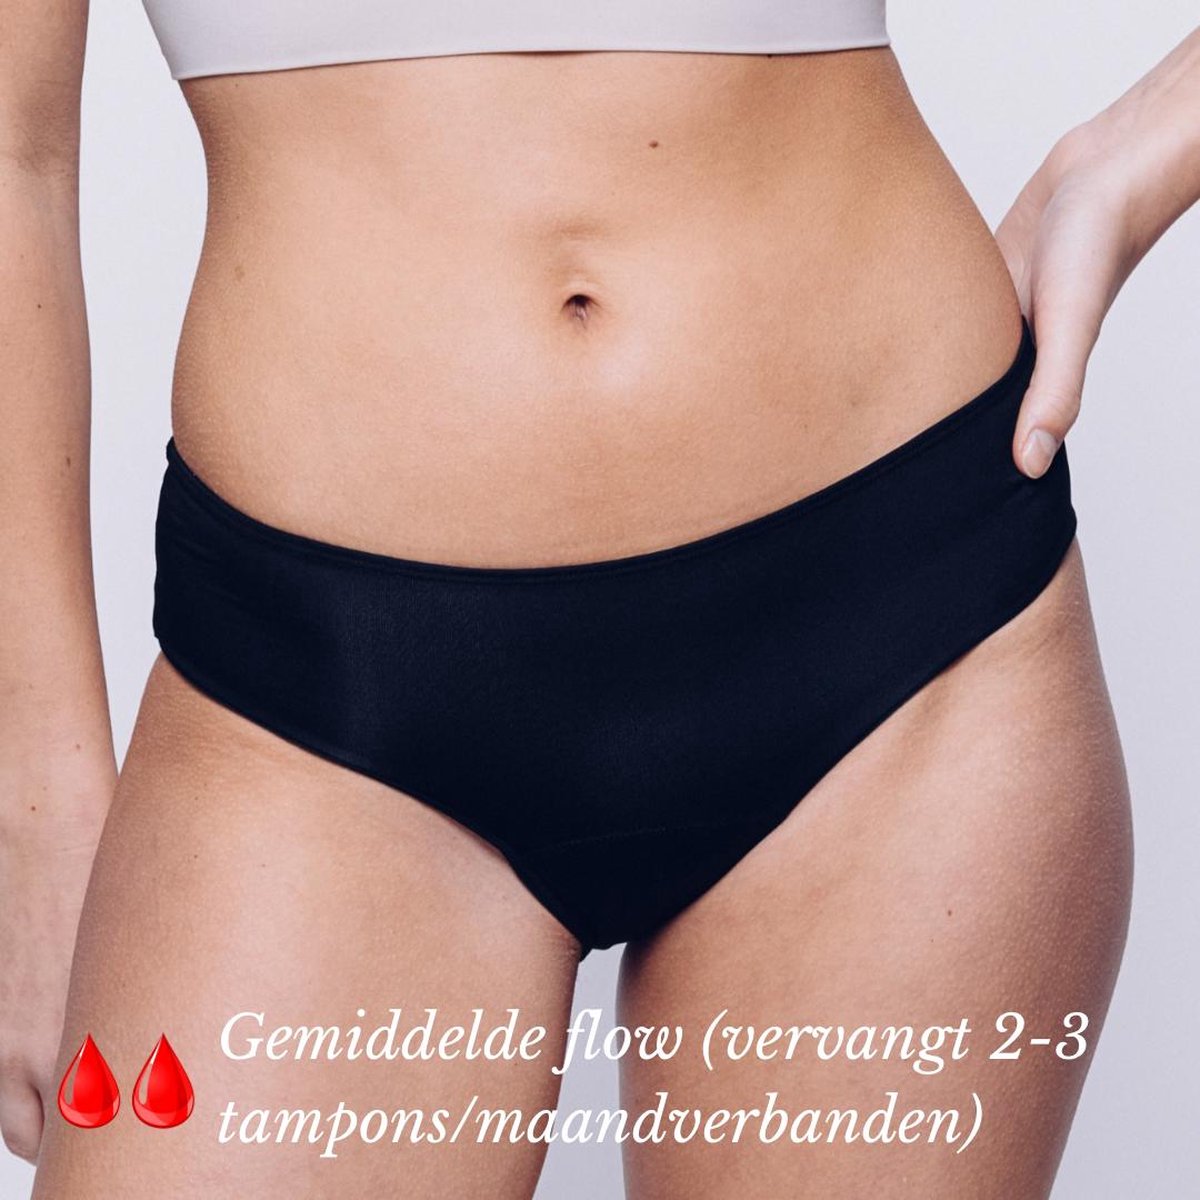 Menstruatie Ondergoed - Period Underwear - Menstruatieslip - Menstruatie Onderbroekje - XXL - Classic - MyFleury®